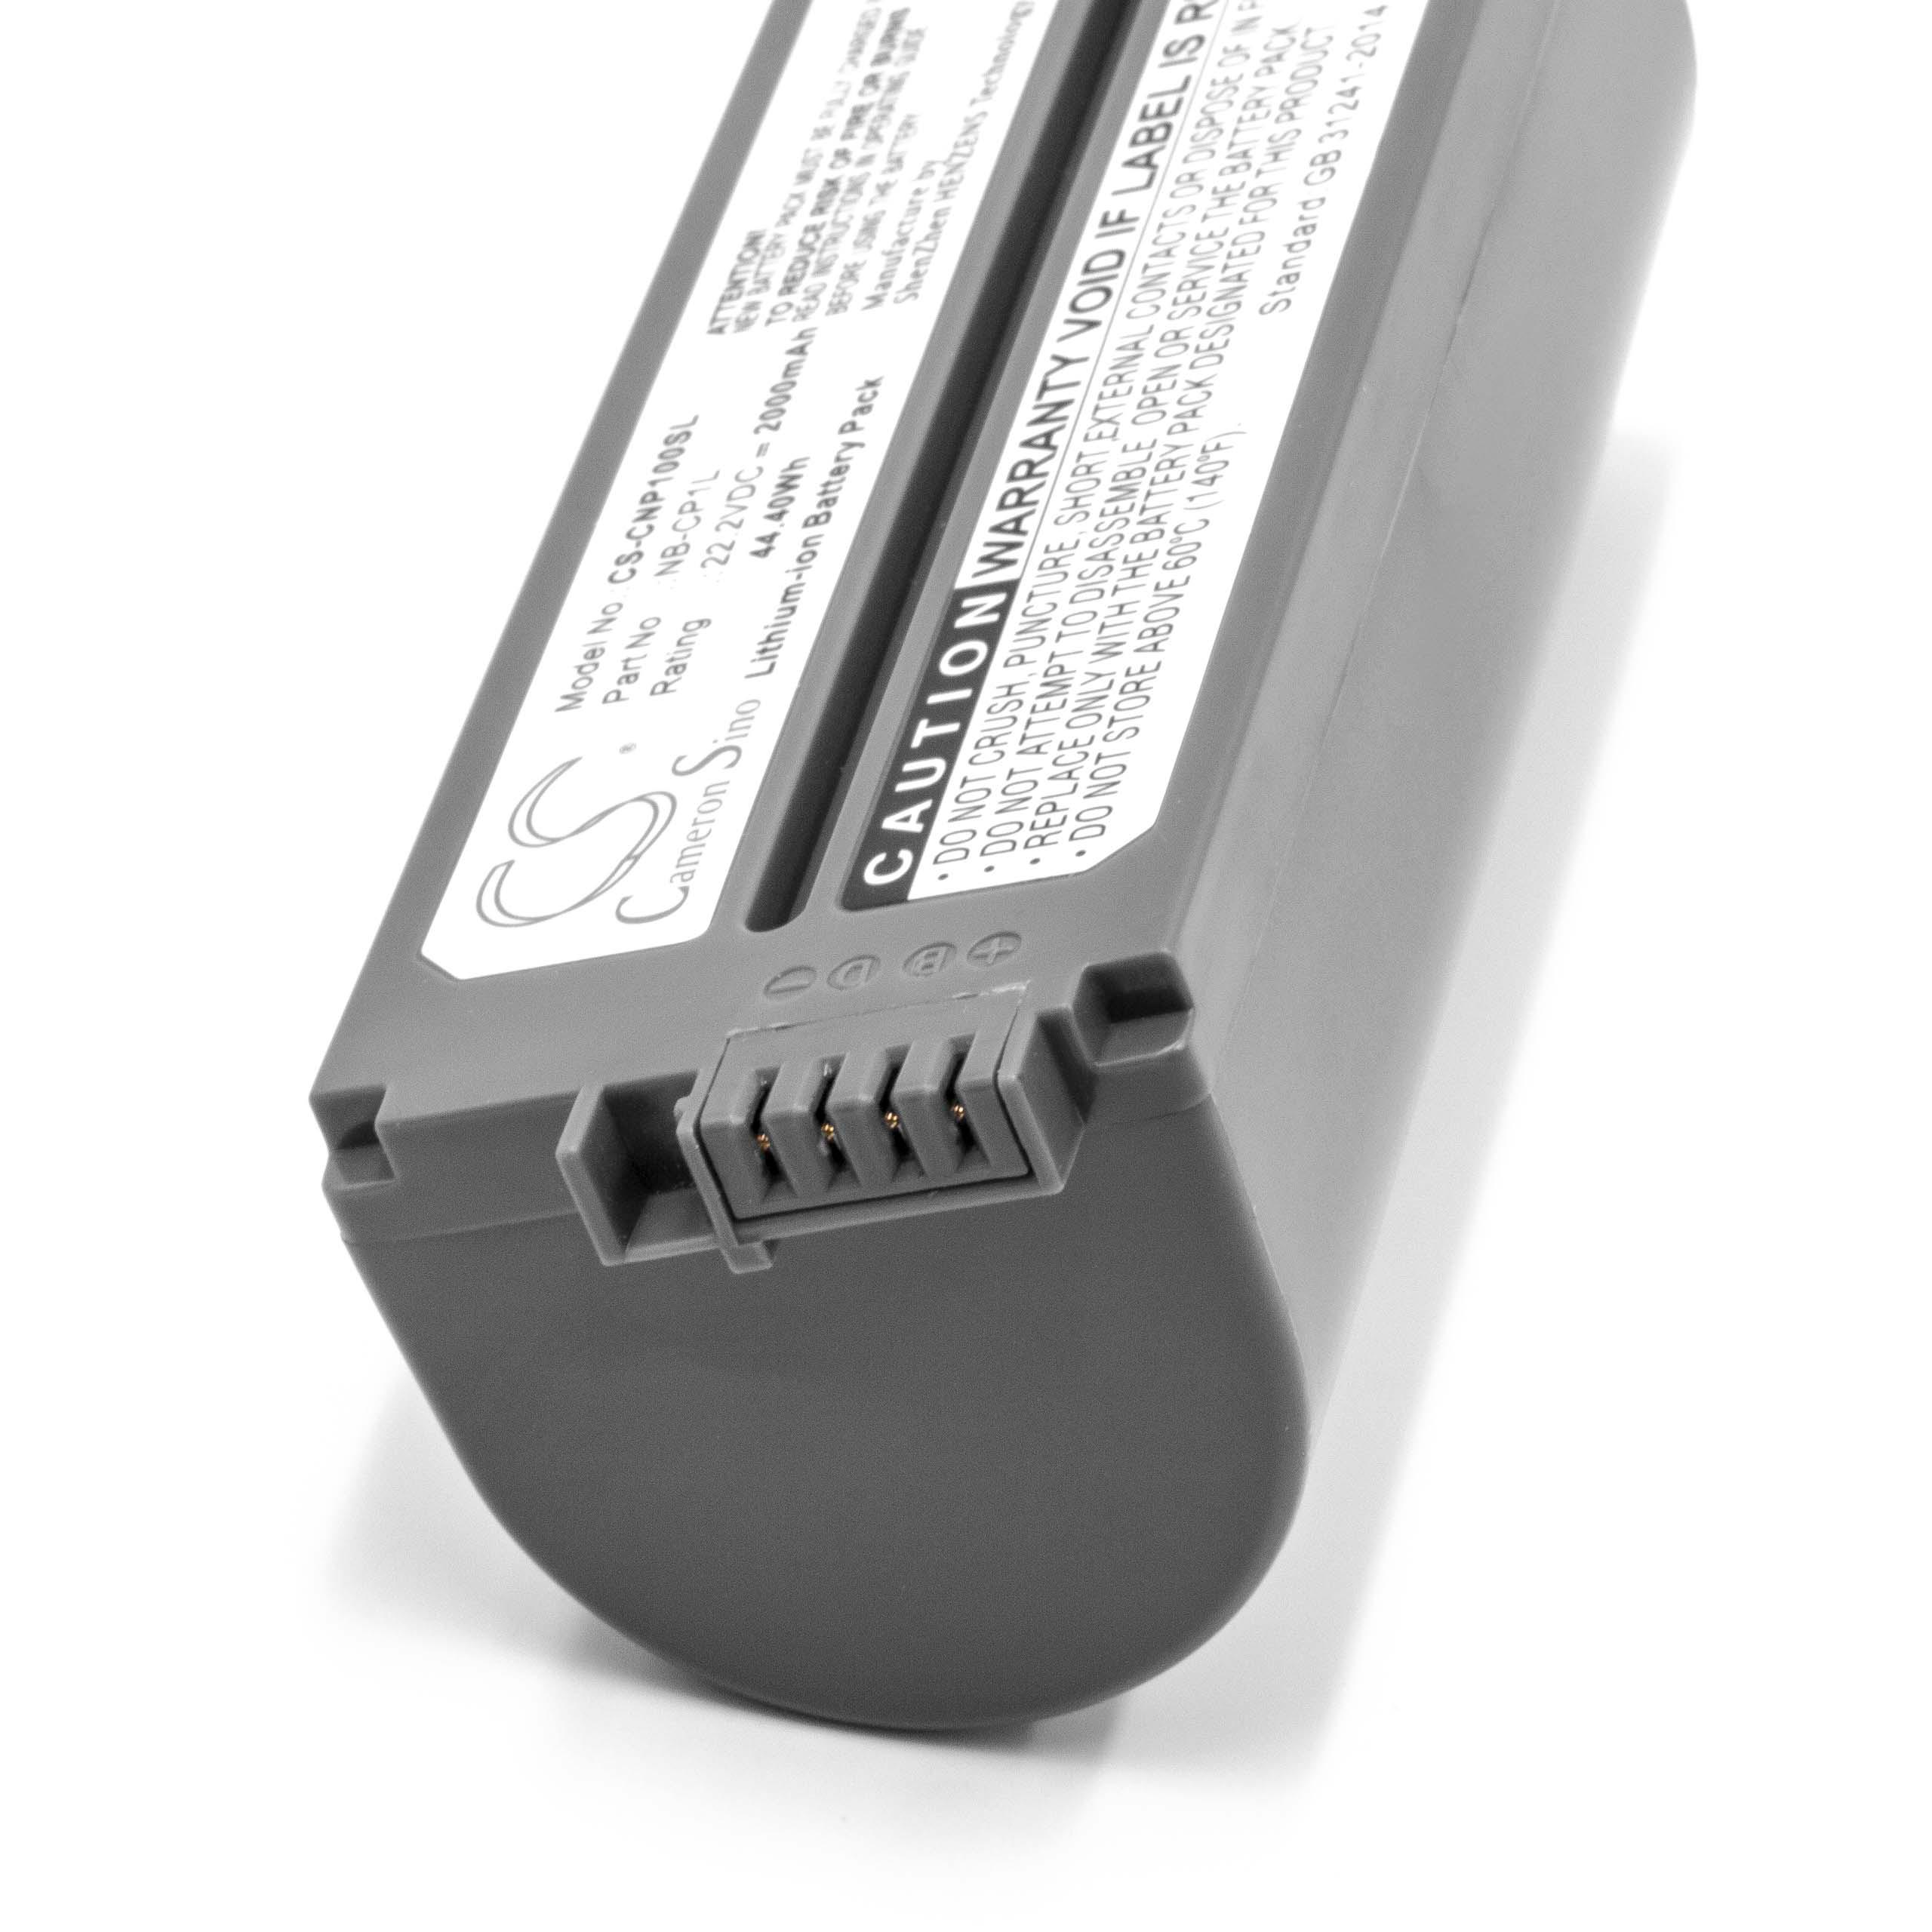 Batterie remplace Canon NB-CP2L, NB-CP1L, CS-CP2L, CS-CP2, CP-2L pour imprimante - 2000mAh 22,2V Li-ion